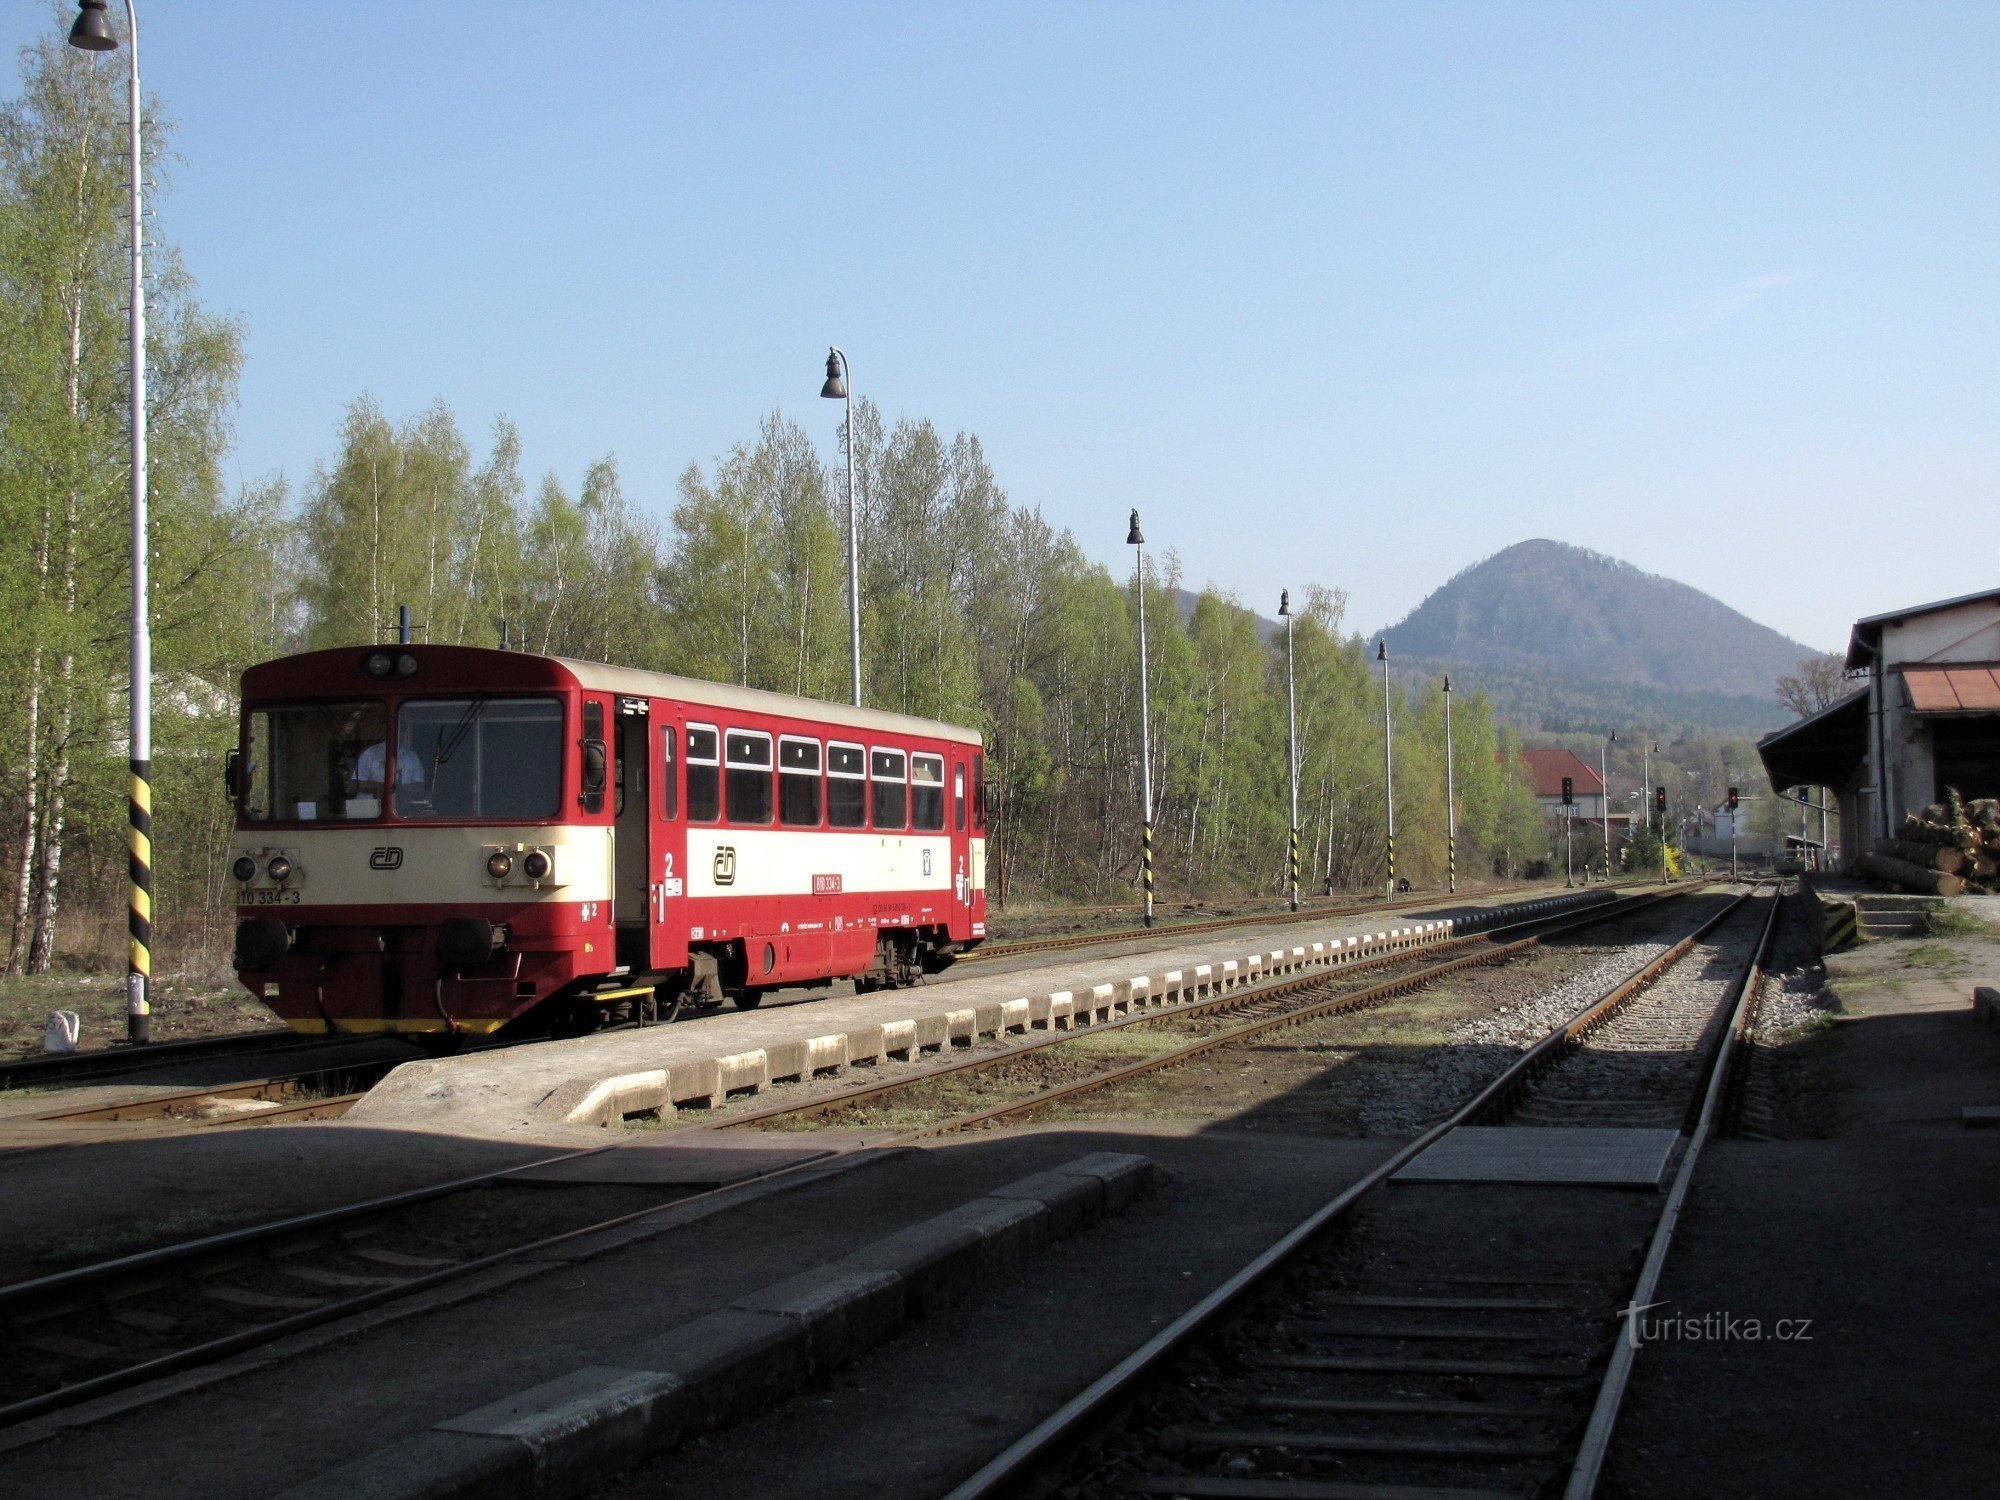 Platform, a háttérben a Klíč-hegy